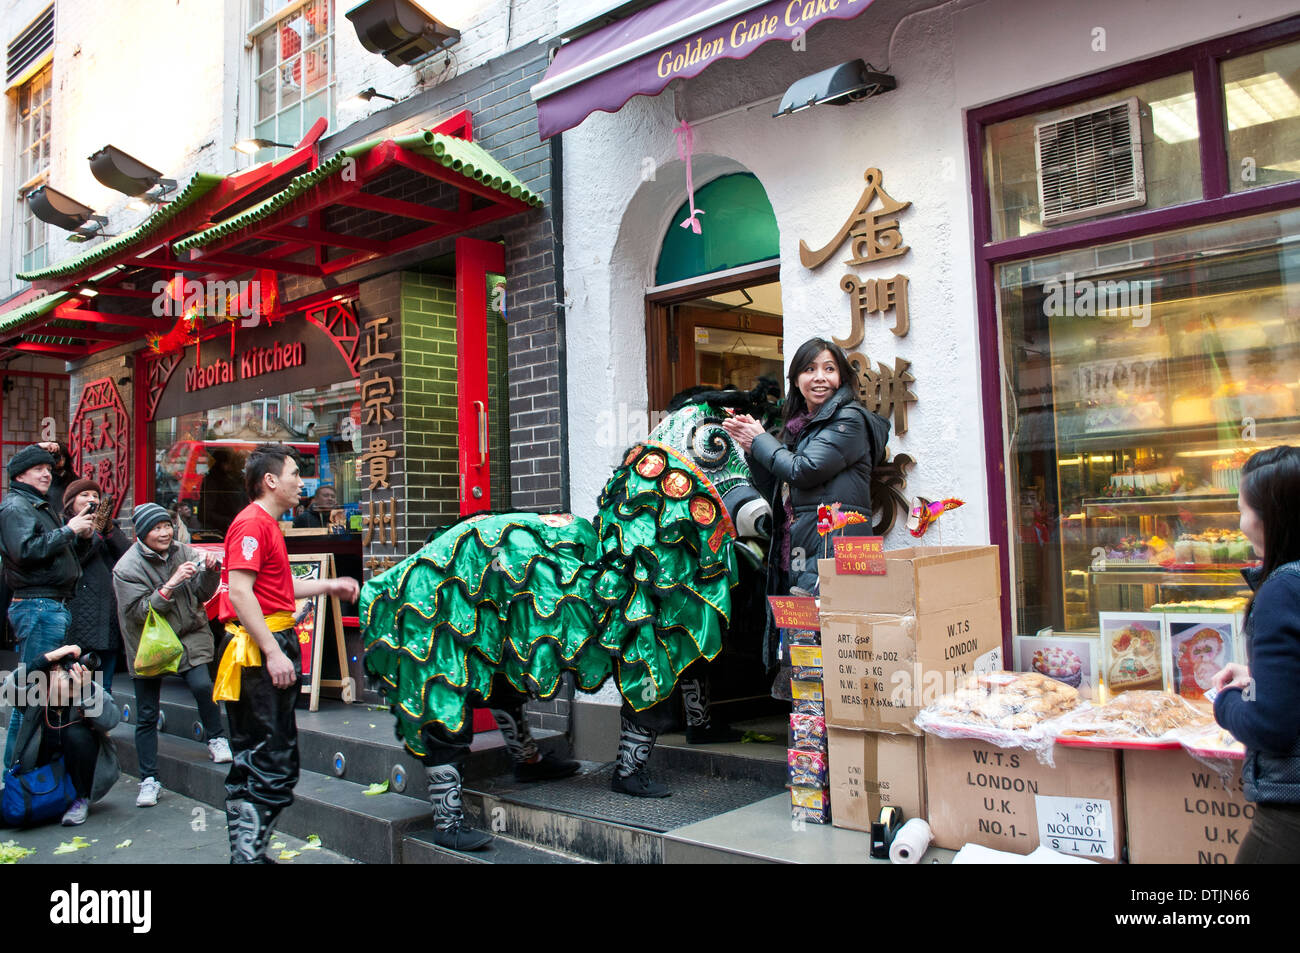 Lion entre dans une boutique, on croit que la coutume traditionnelle chinoise porter chance pour le Nouvel An Chinois, Chinatown, Soho, London, UK Banque D'Images